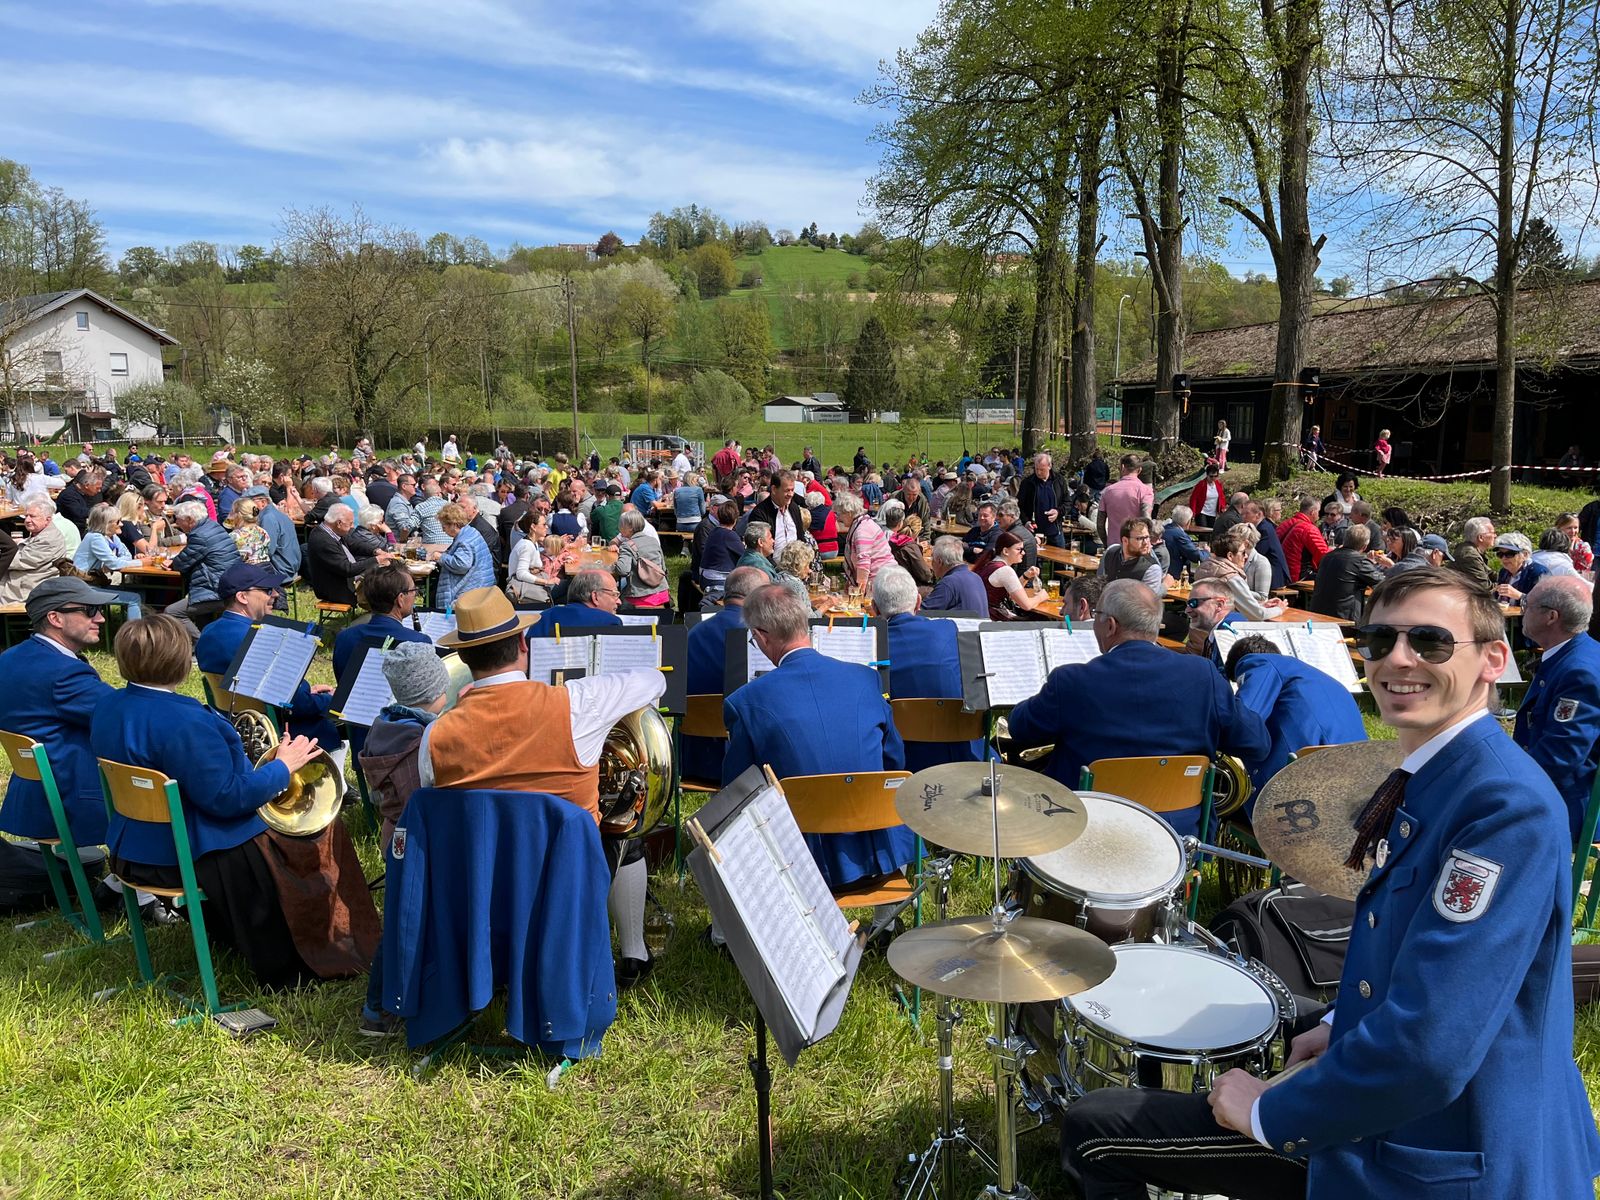 Gemeinschaftsveranstaltung im Freien mit der Live-Band Stadtkapelle Leonding und sitzendem Publikum, das die Aufführung genießt.